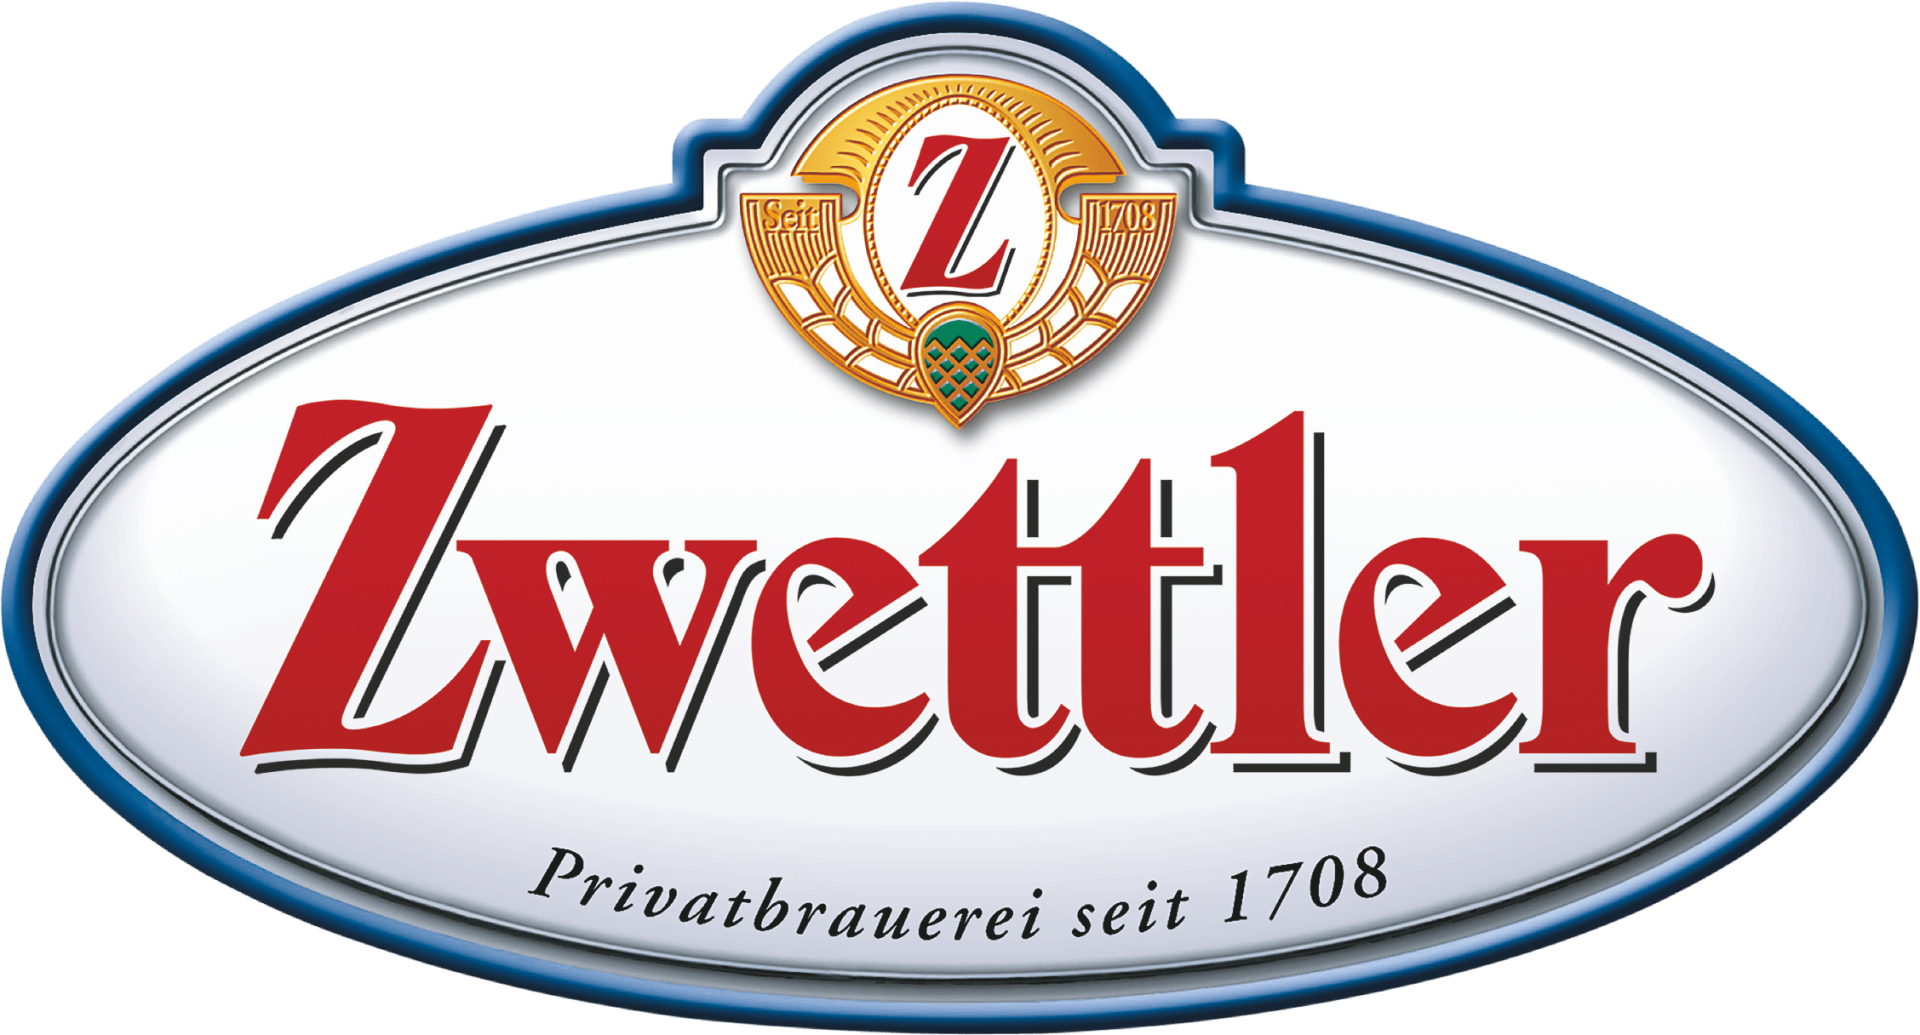 Privatbrauerei Zwettl